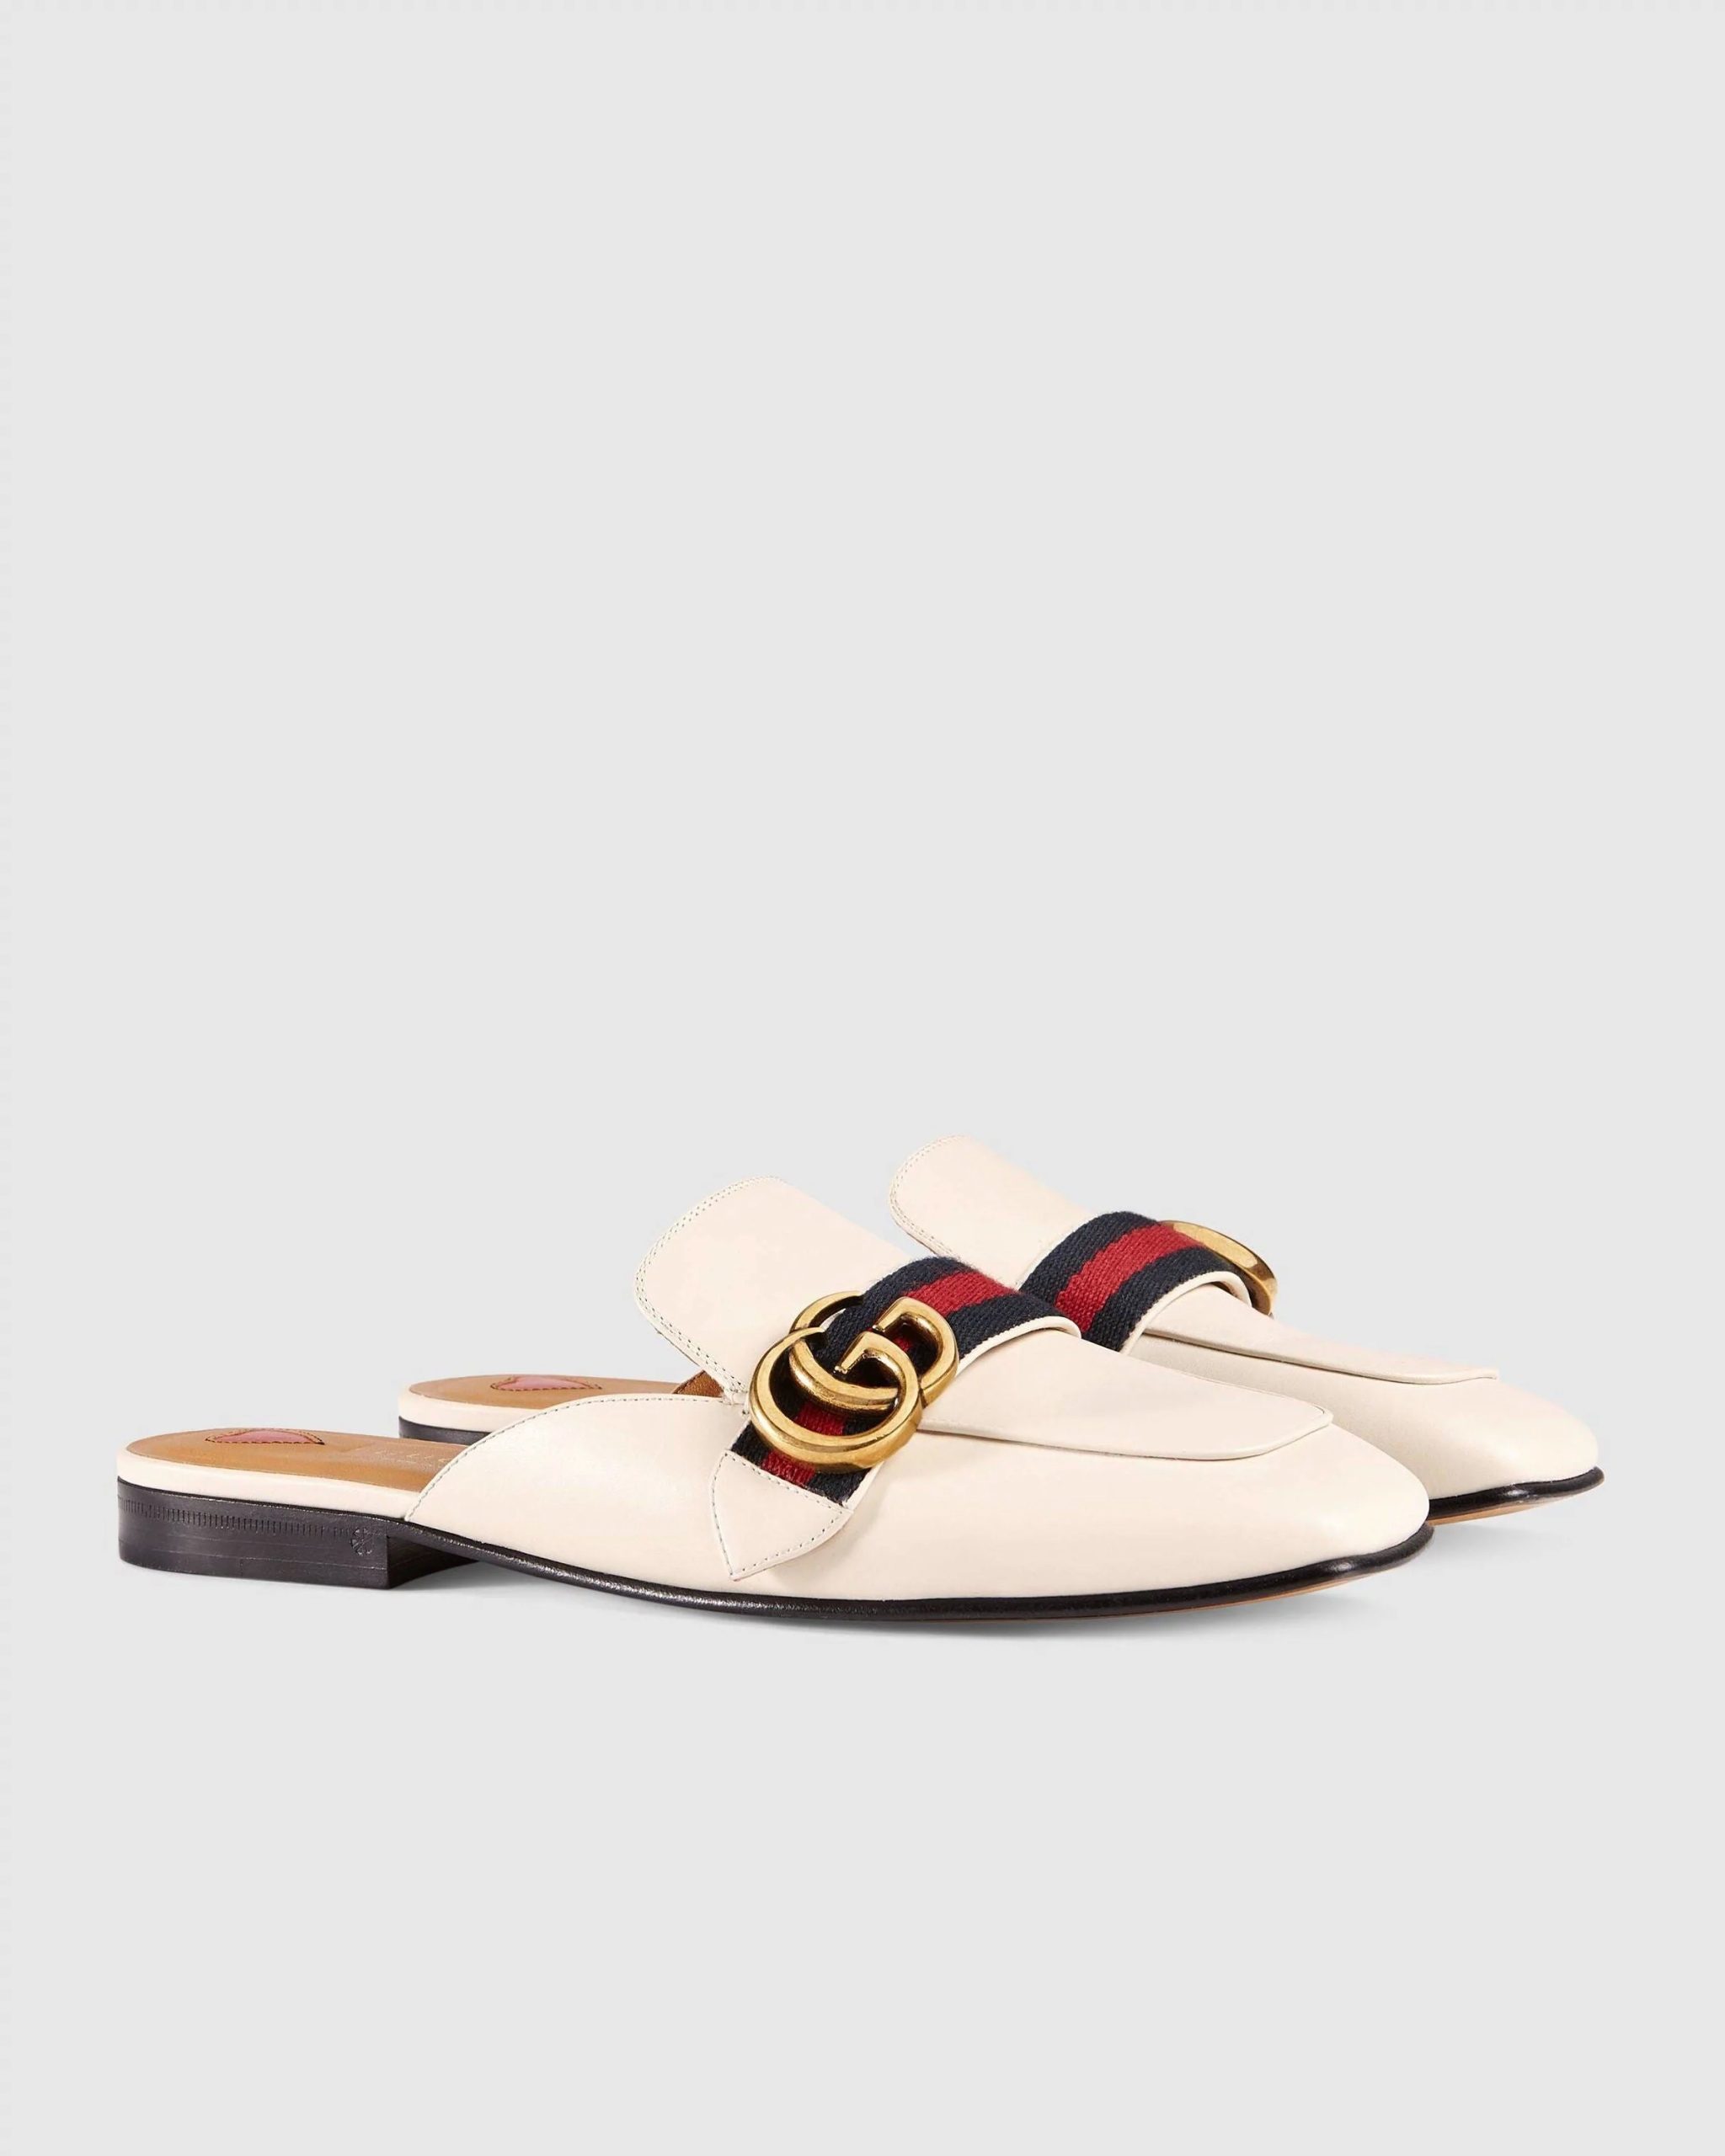 Gucci Leather Slipper, White